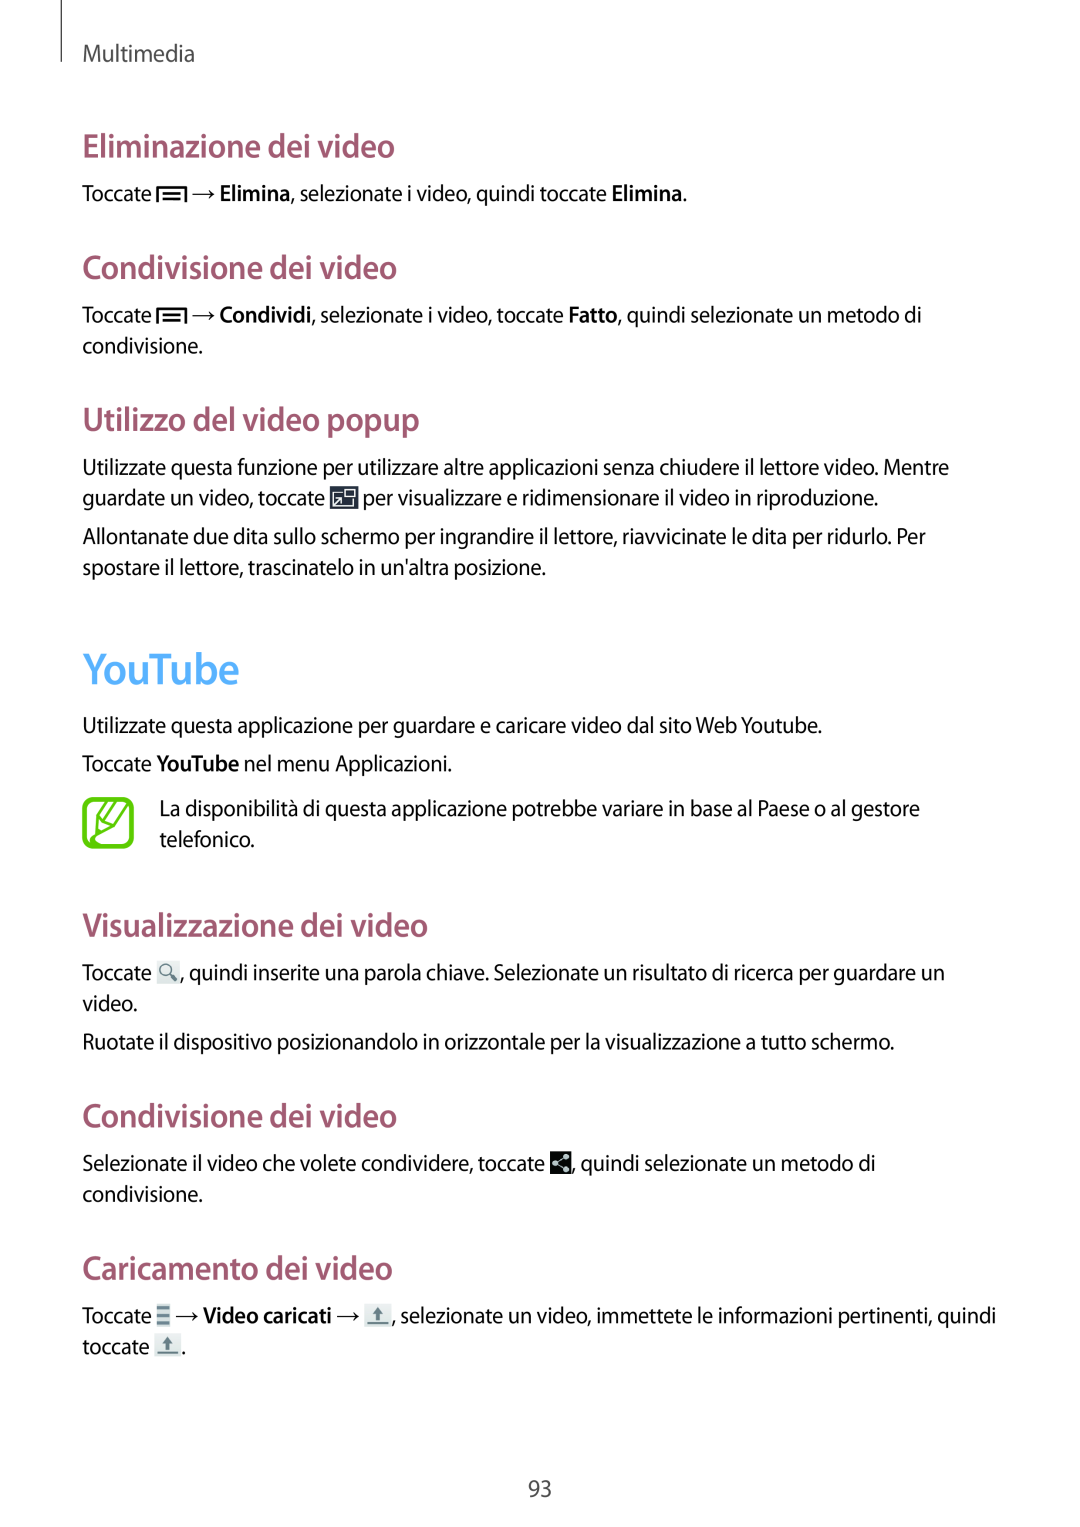 Samsung GT-N7100RWDWIN manual YouTube, Eliminazione dei video, Condivisione dei video, Utilizzo del video popup, Multimedia 